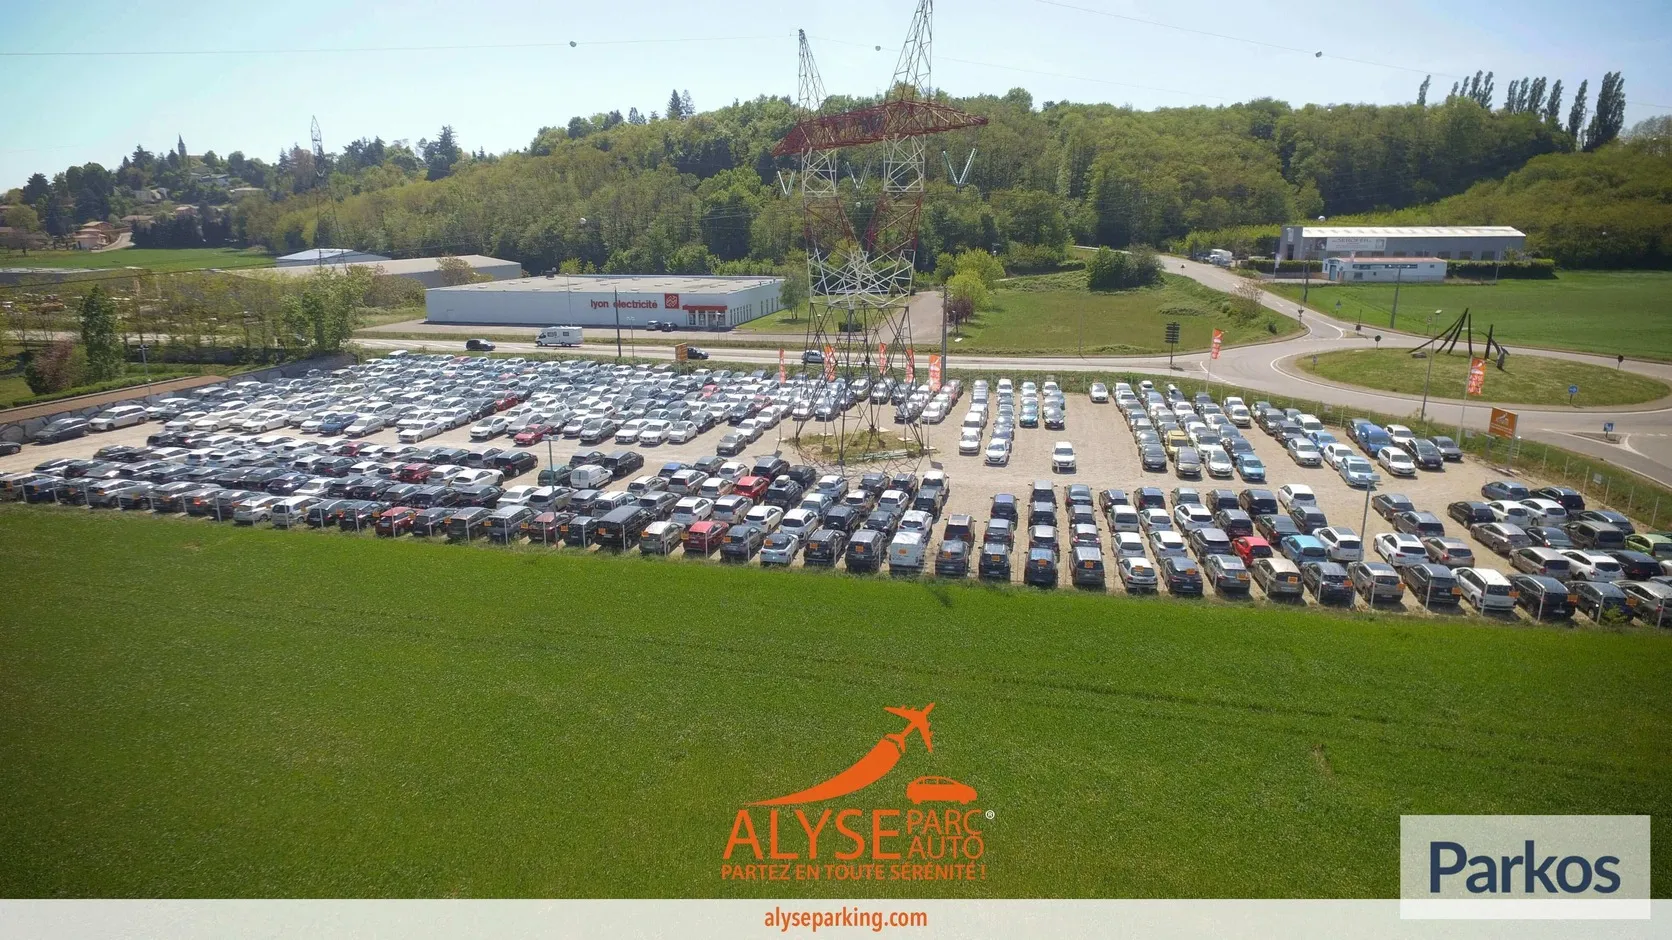 Alyse Parc Auto Bâle-Mulhouse - Parken Flughafen Basel - picture 1